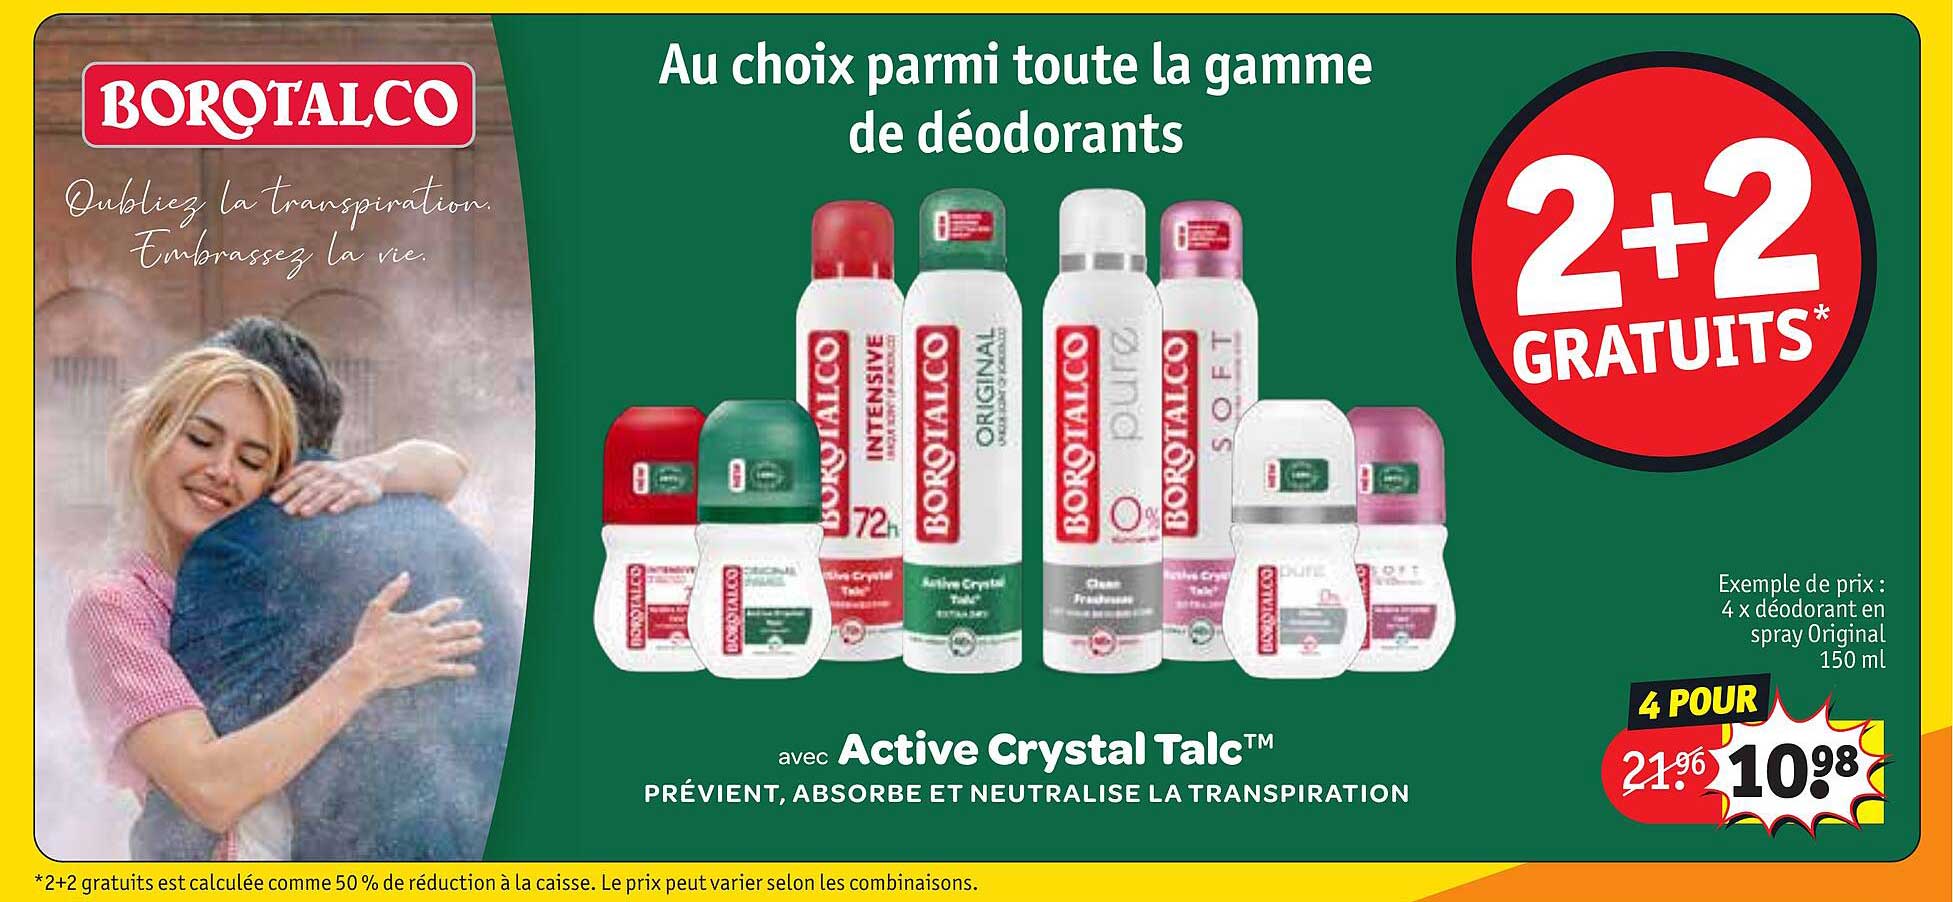 Promo La Gamme De Déodorants Borotalco chez Kruidvat - iCatalogue.fr